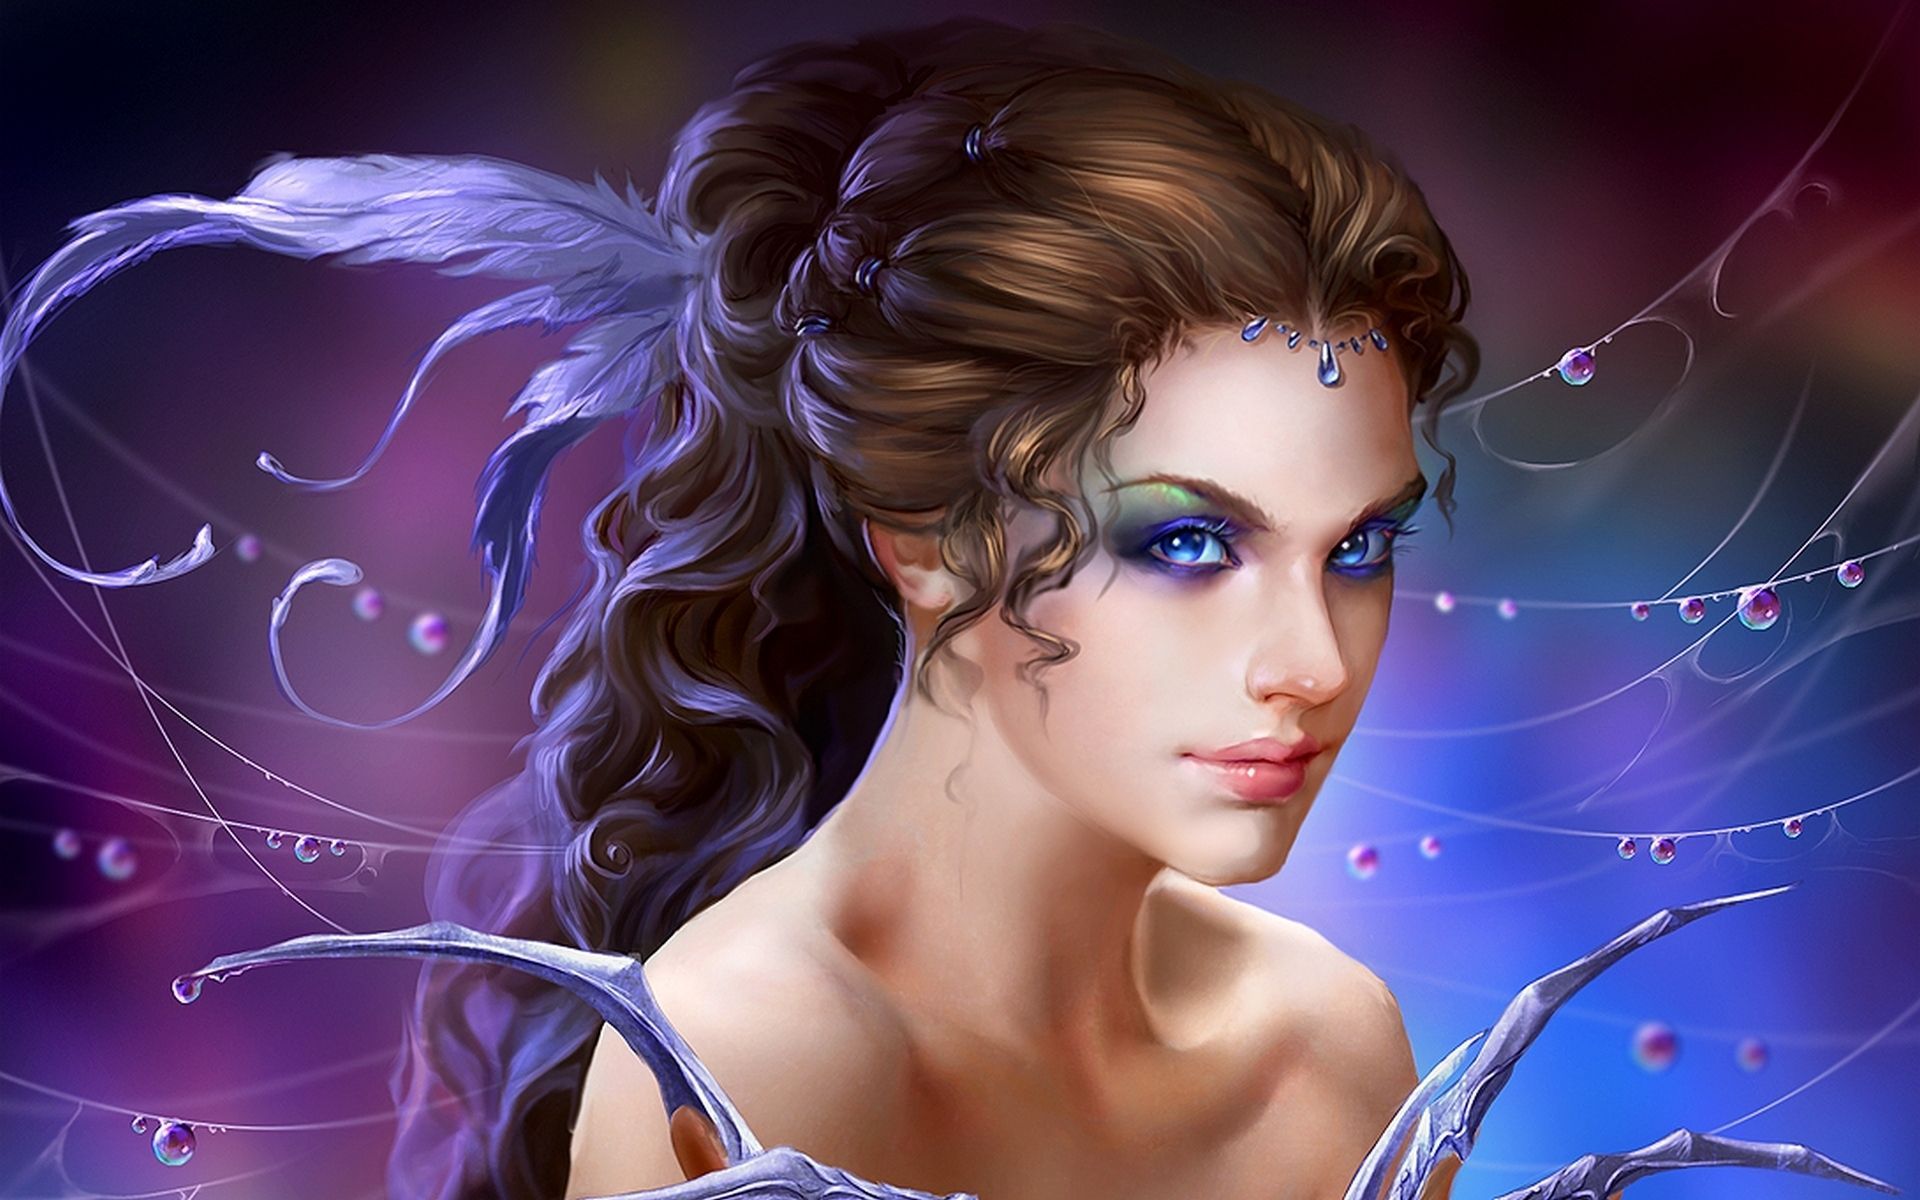 Download Cute Girl Fantasy Wallpaper | Full HD Wallpapers